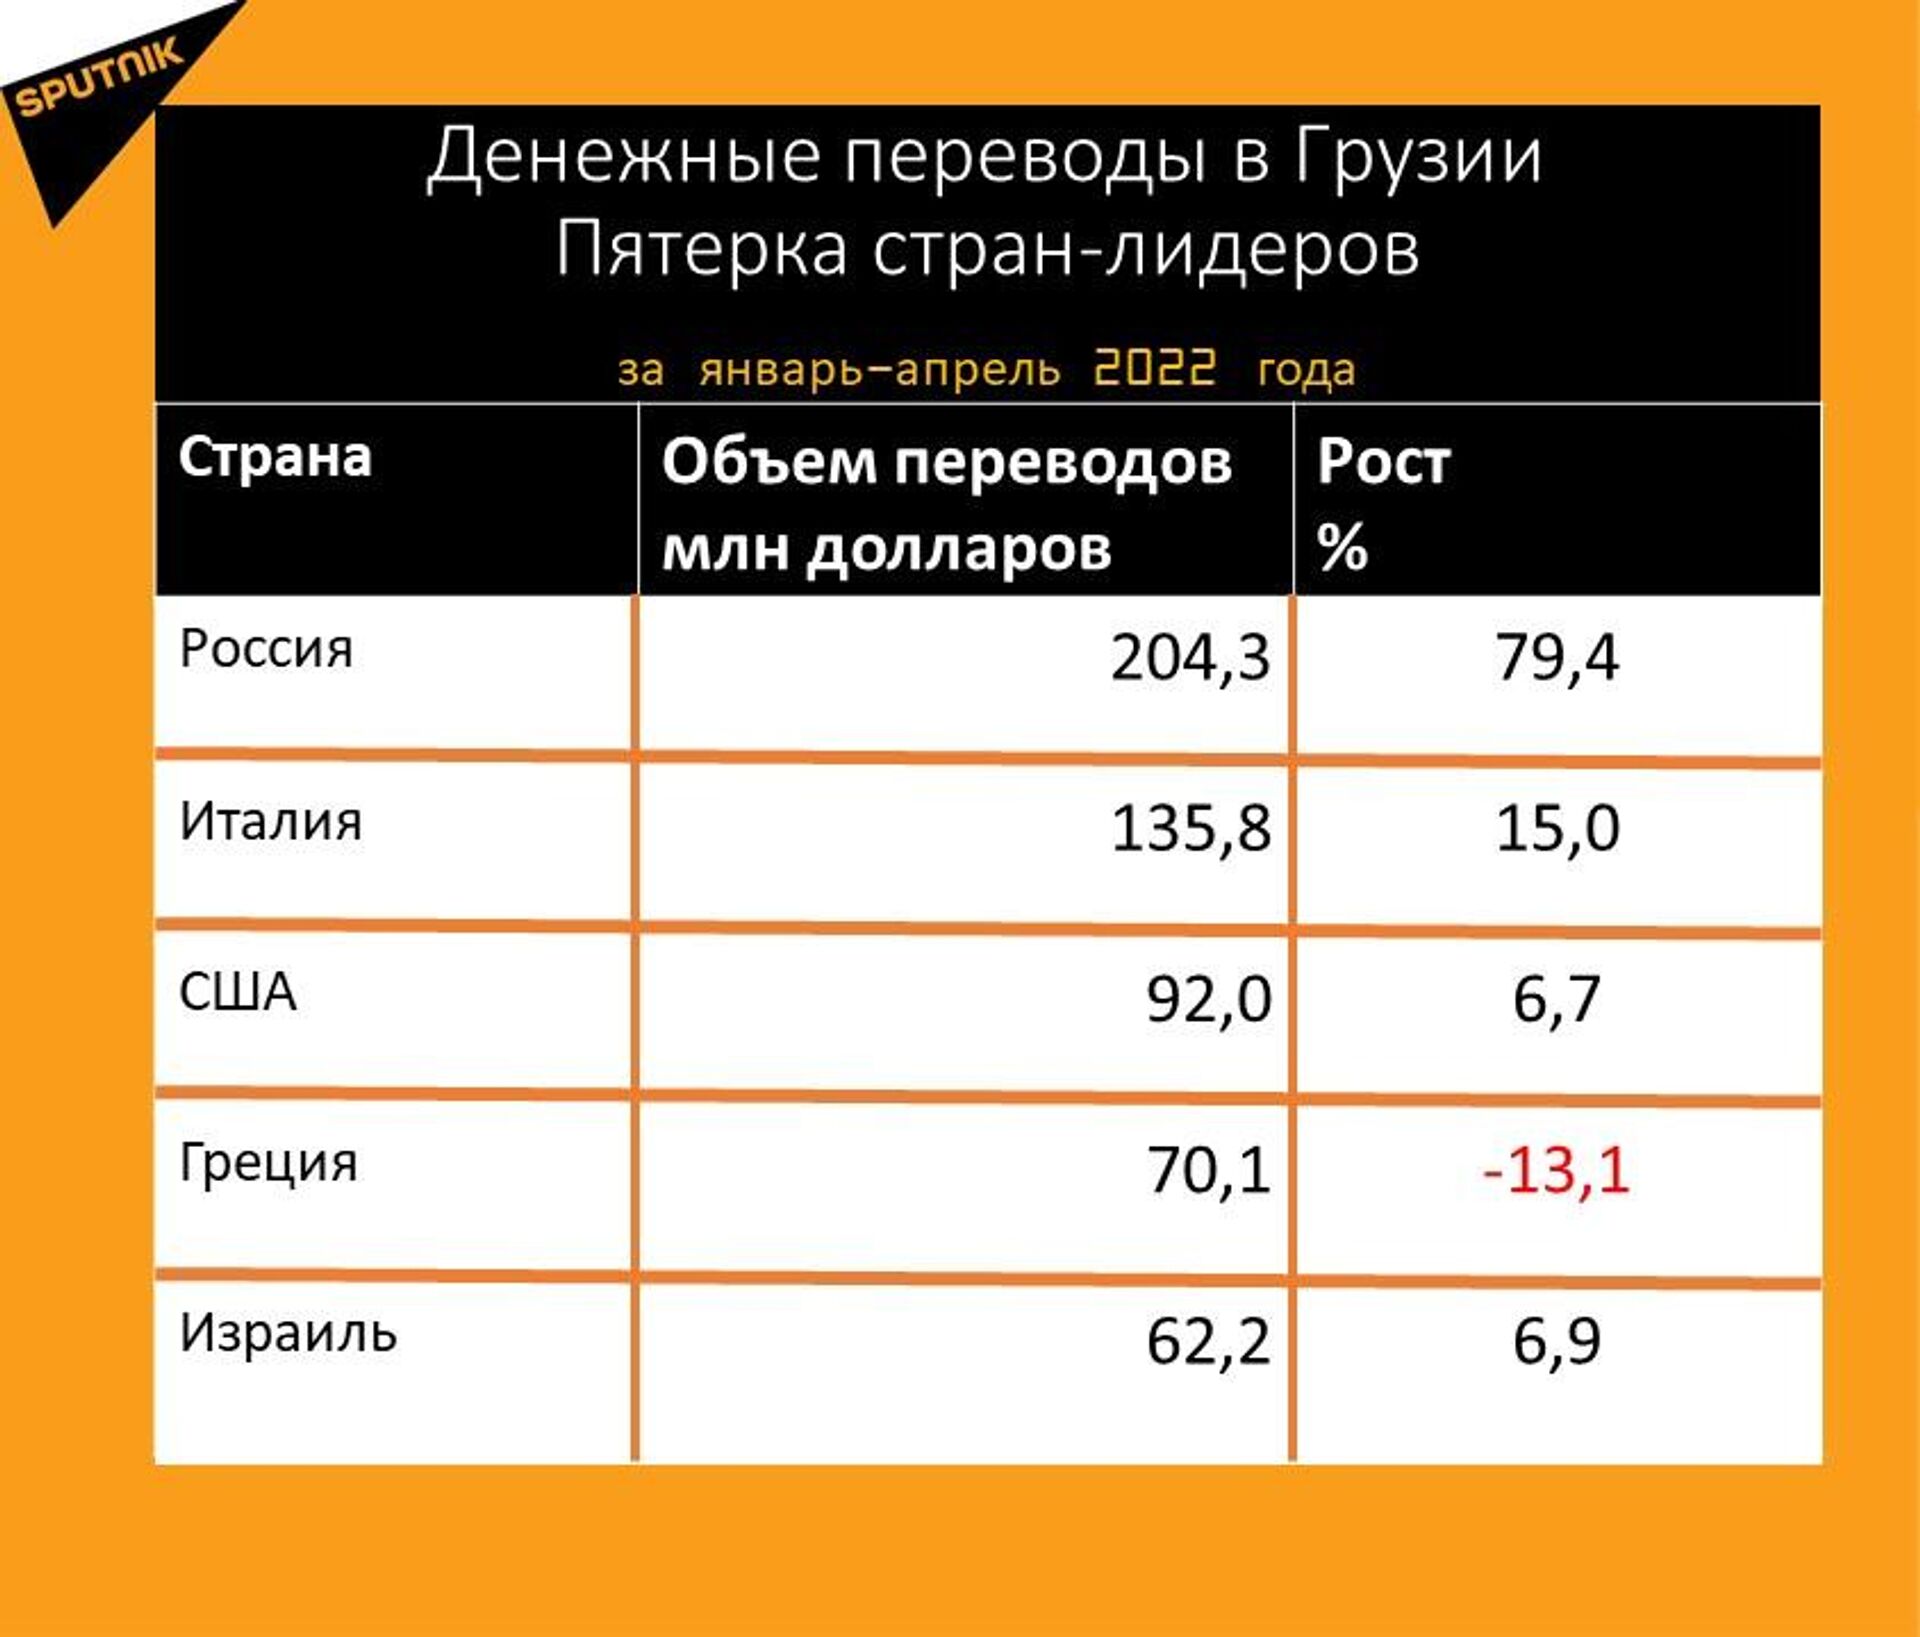 Статистика денежных переводов в Грузию за январь-апрель 2022 года - Sputnik Грузия, 1920, 17.05.2022